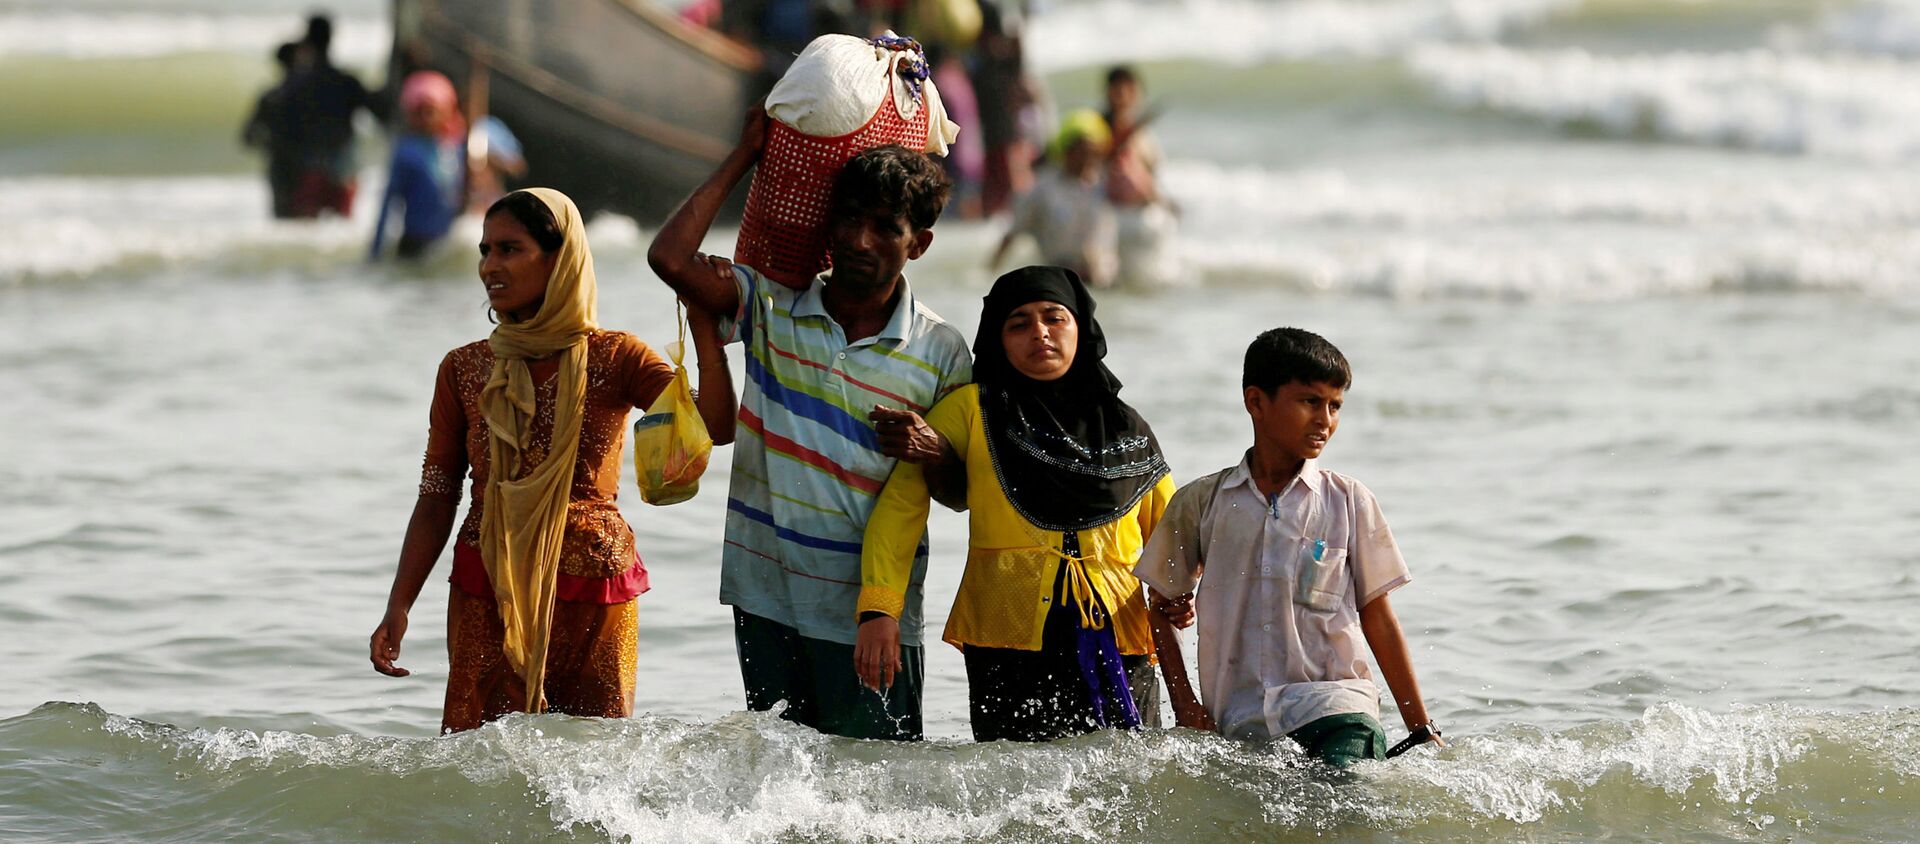 Dân tị nạn người Rohingya đổ lên bờ với đồ đạc của họ sau khi vượt biên giới đường biển giữa Bangladesh và Myanmar. - Sputnik Việt Nam, 1920, 02.04.2020